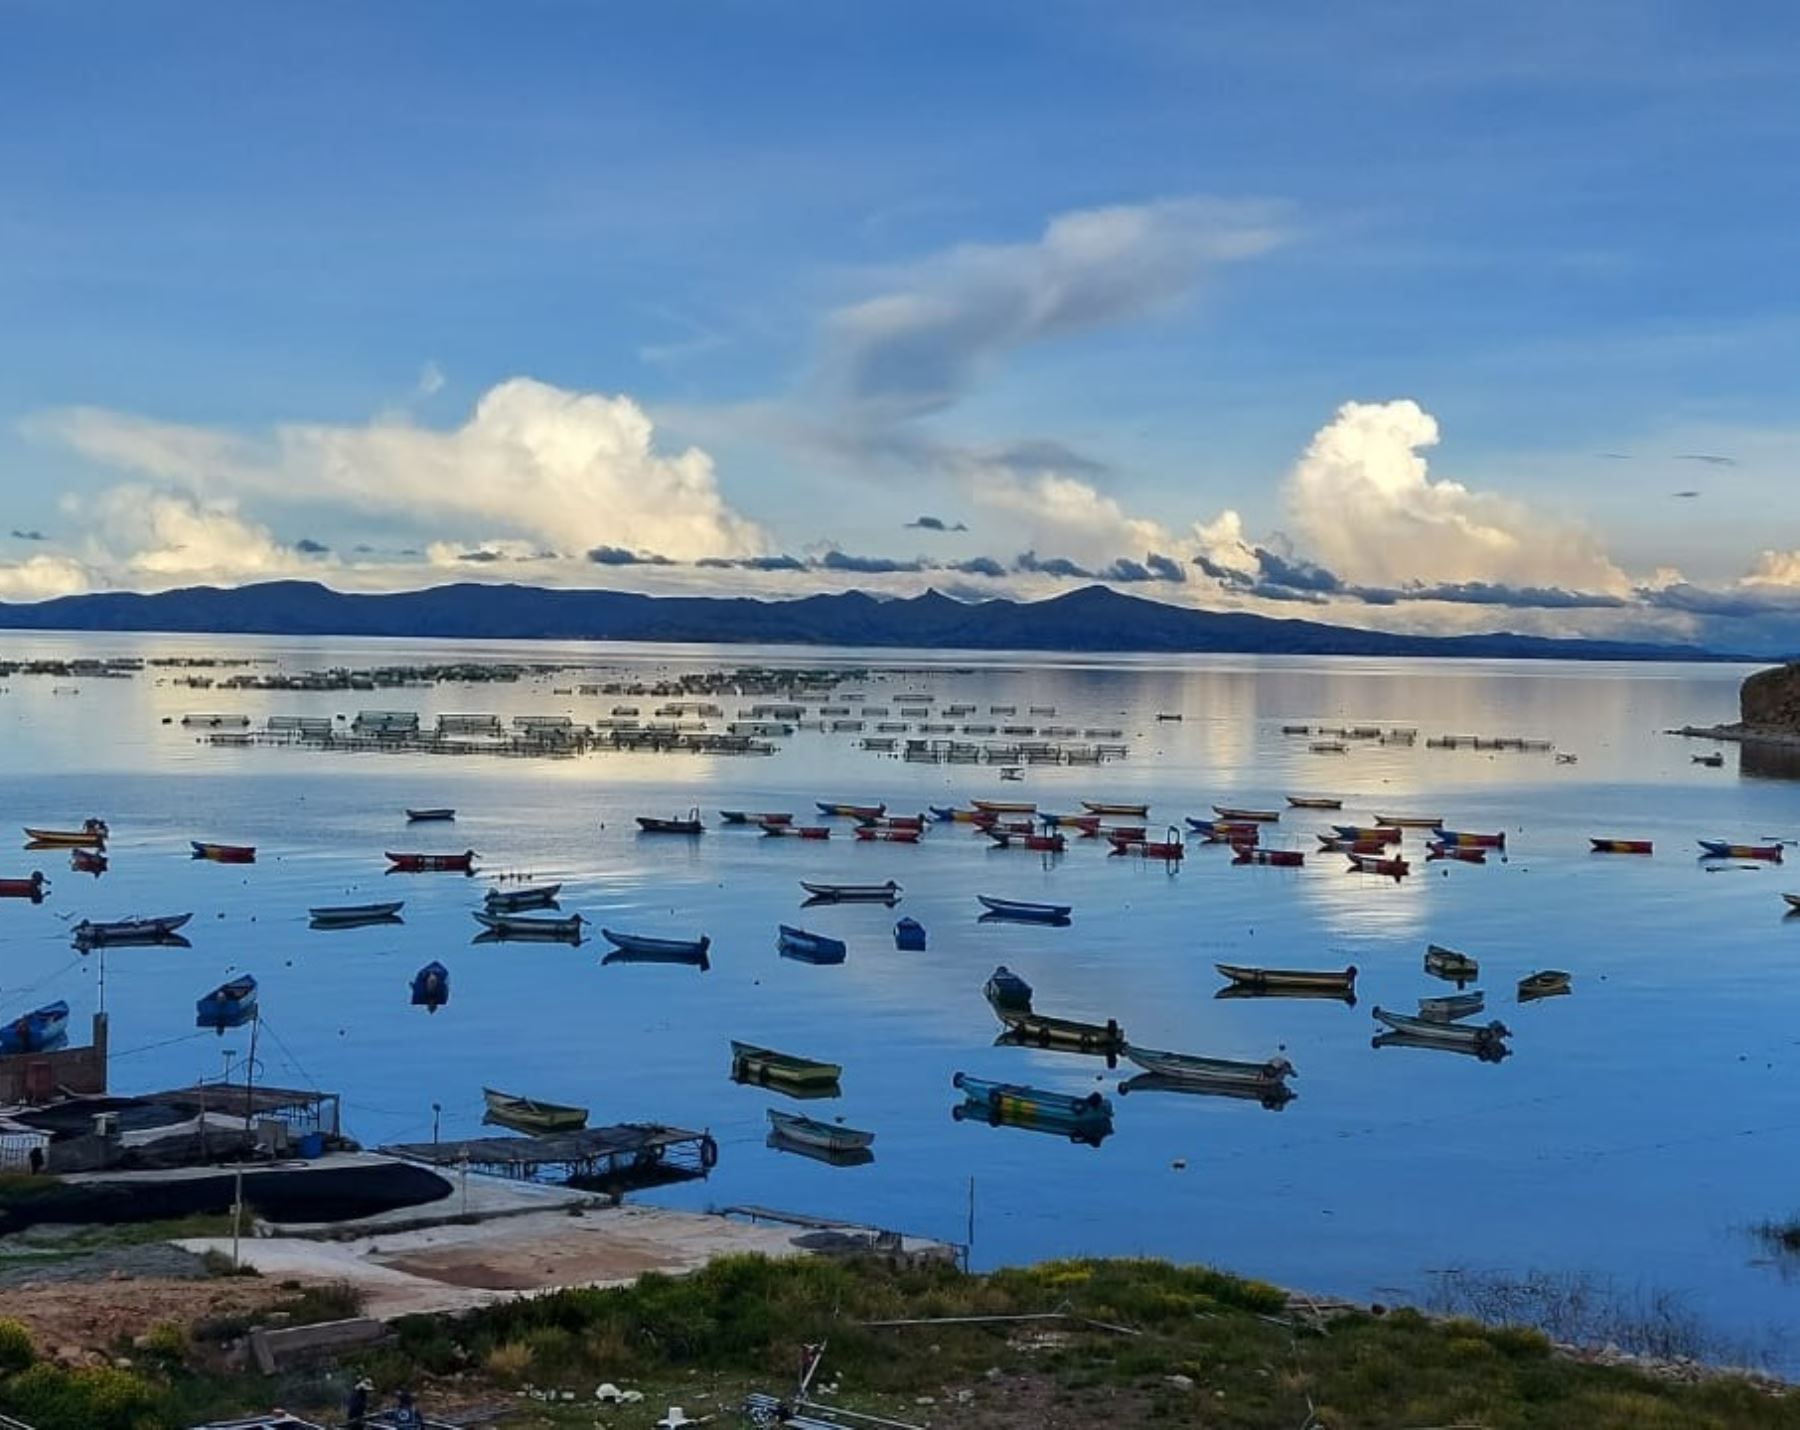 El lago Titicaca, ubicado en Puno, será la estrella de la conferencia internacional que se celebrará en octubre en Puno y que congregará a expertos de diversos países que promoverán estrategias de conservación de lagos y humedales. ANDINA/Difusión